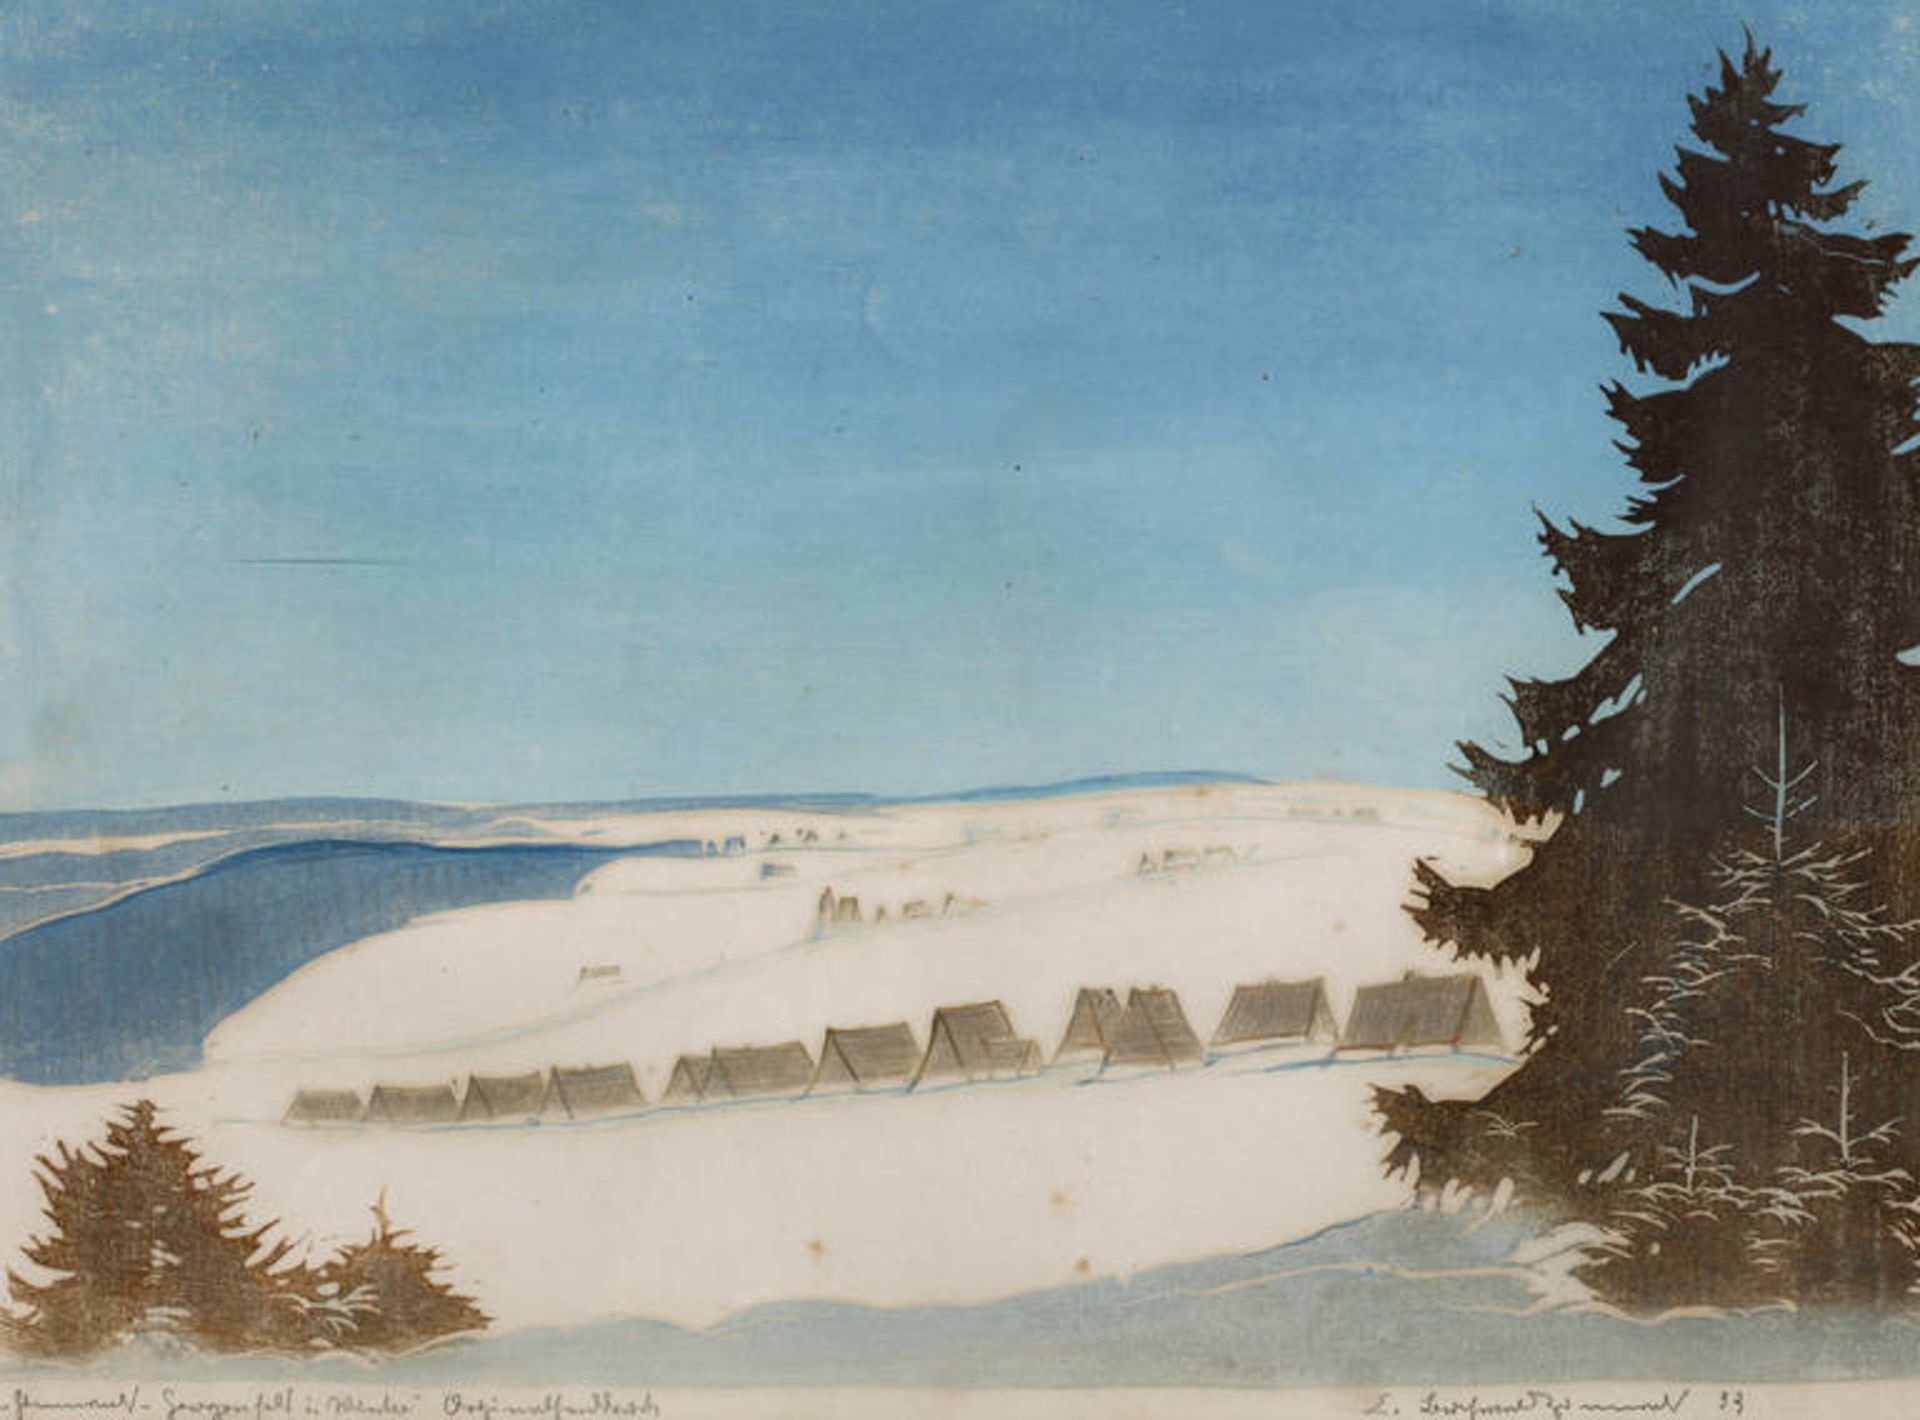 Erich Buchwald-Zinnwald, "Zinnwald-Georgenfeld im Winter" Blick in idyllische, tief verschneite